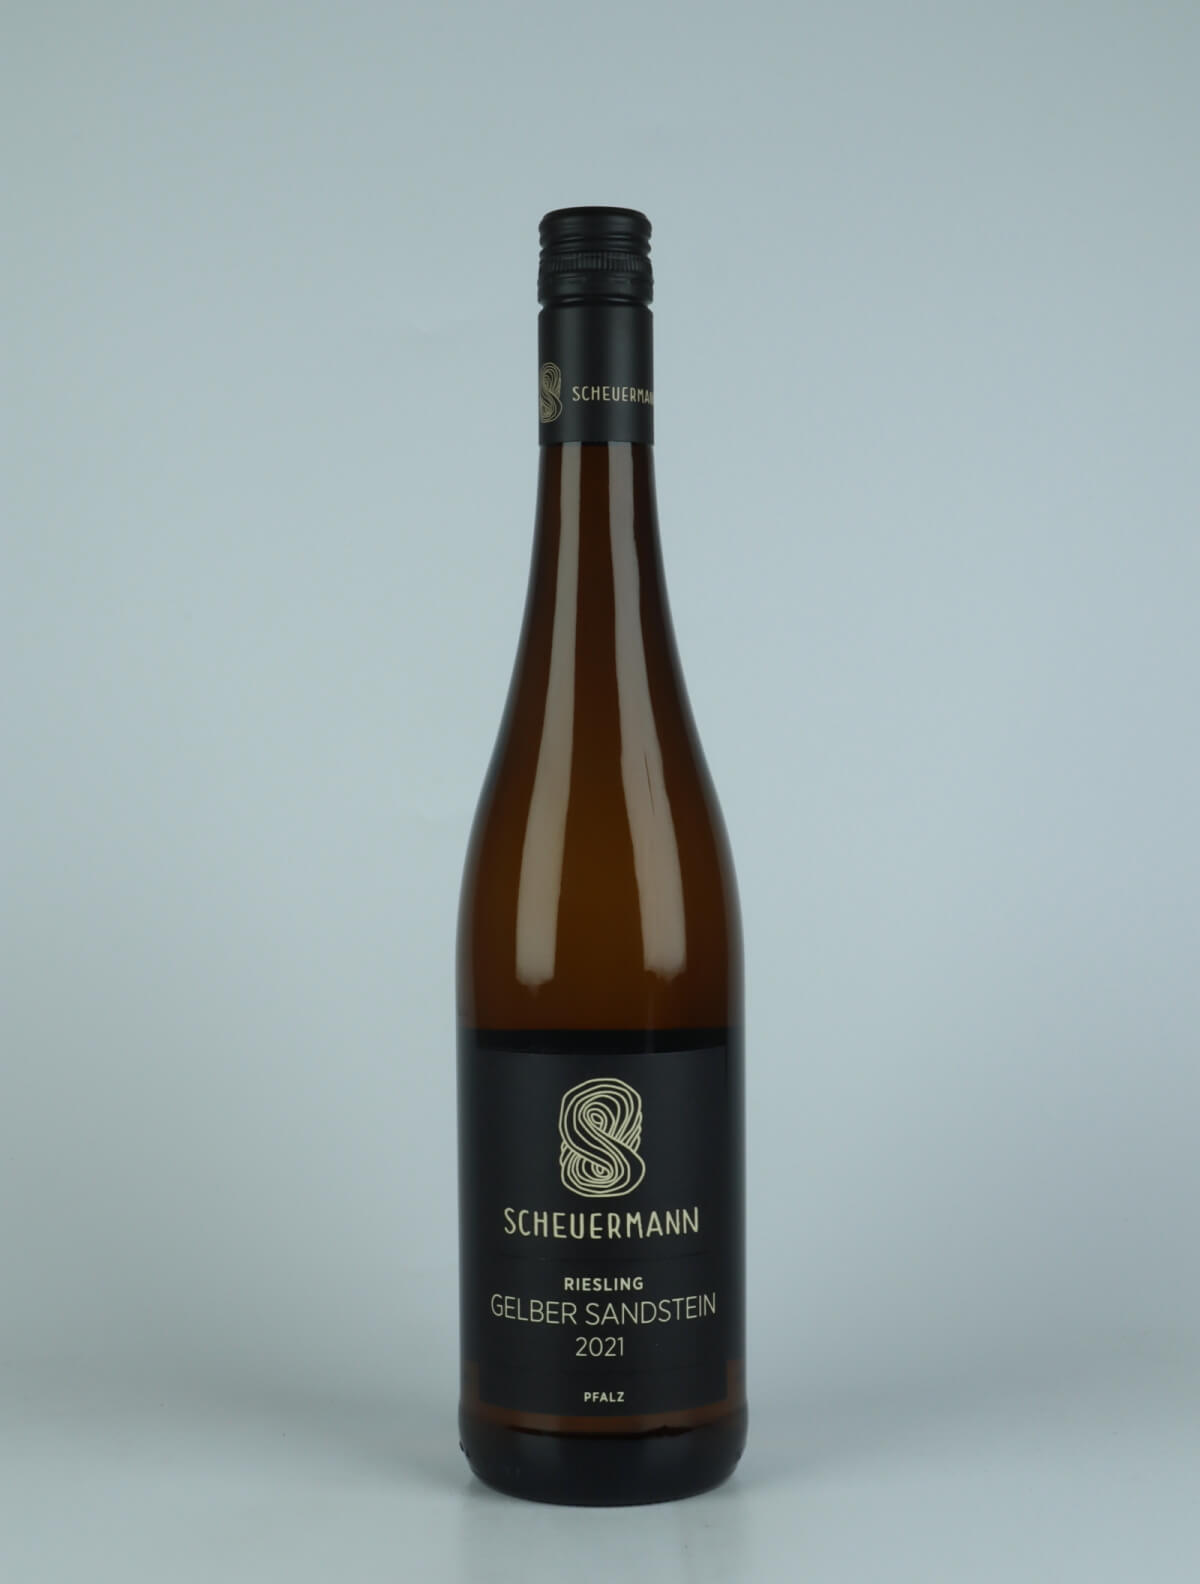 A bottle 2021 Riesling Gelber Sandstein White wine from Weingut Scheuermann, Pfalz in Germany